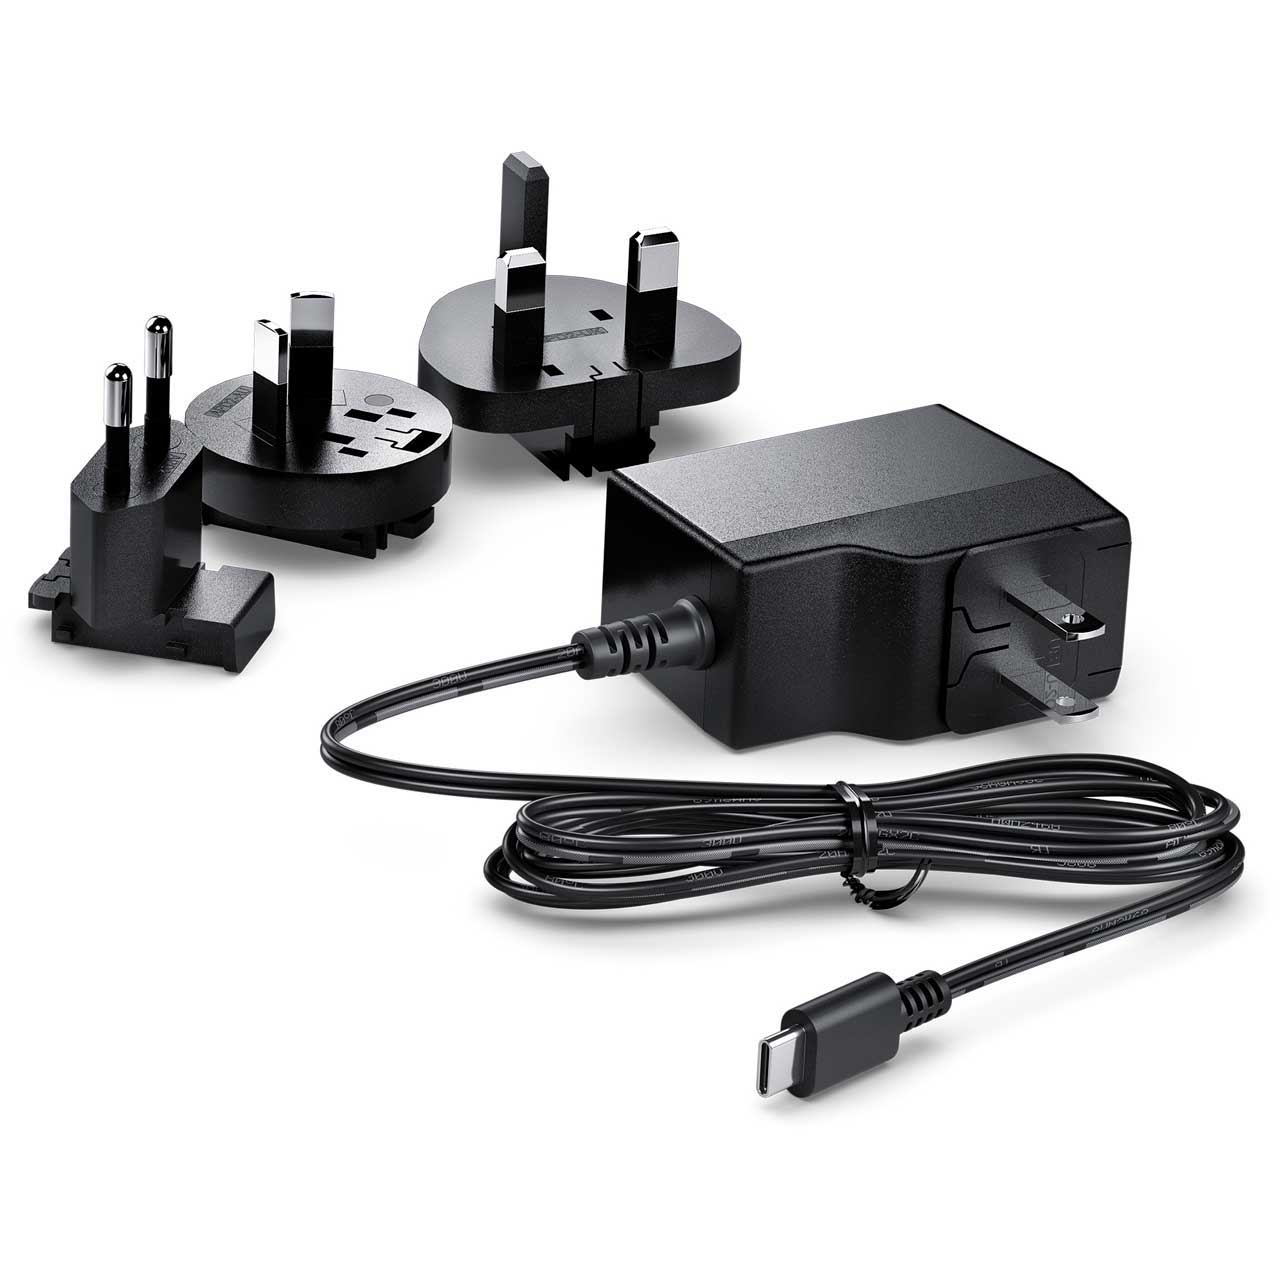 ブラックマジックデザイン 国内正規品コンバーター Micro Converter BiDirect SDI HDMI 3G PSU - 1